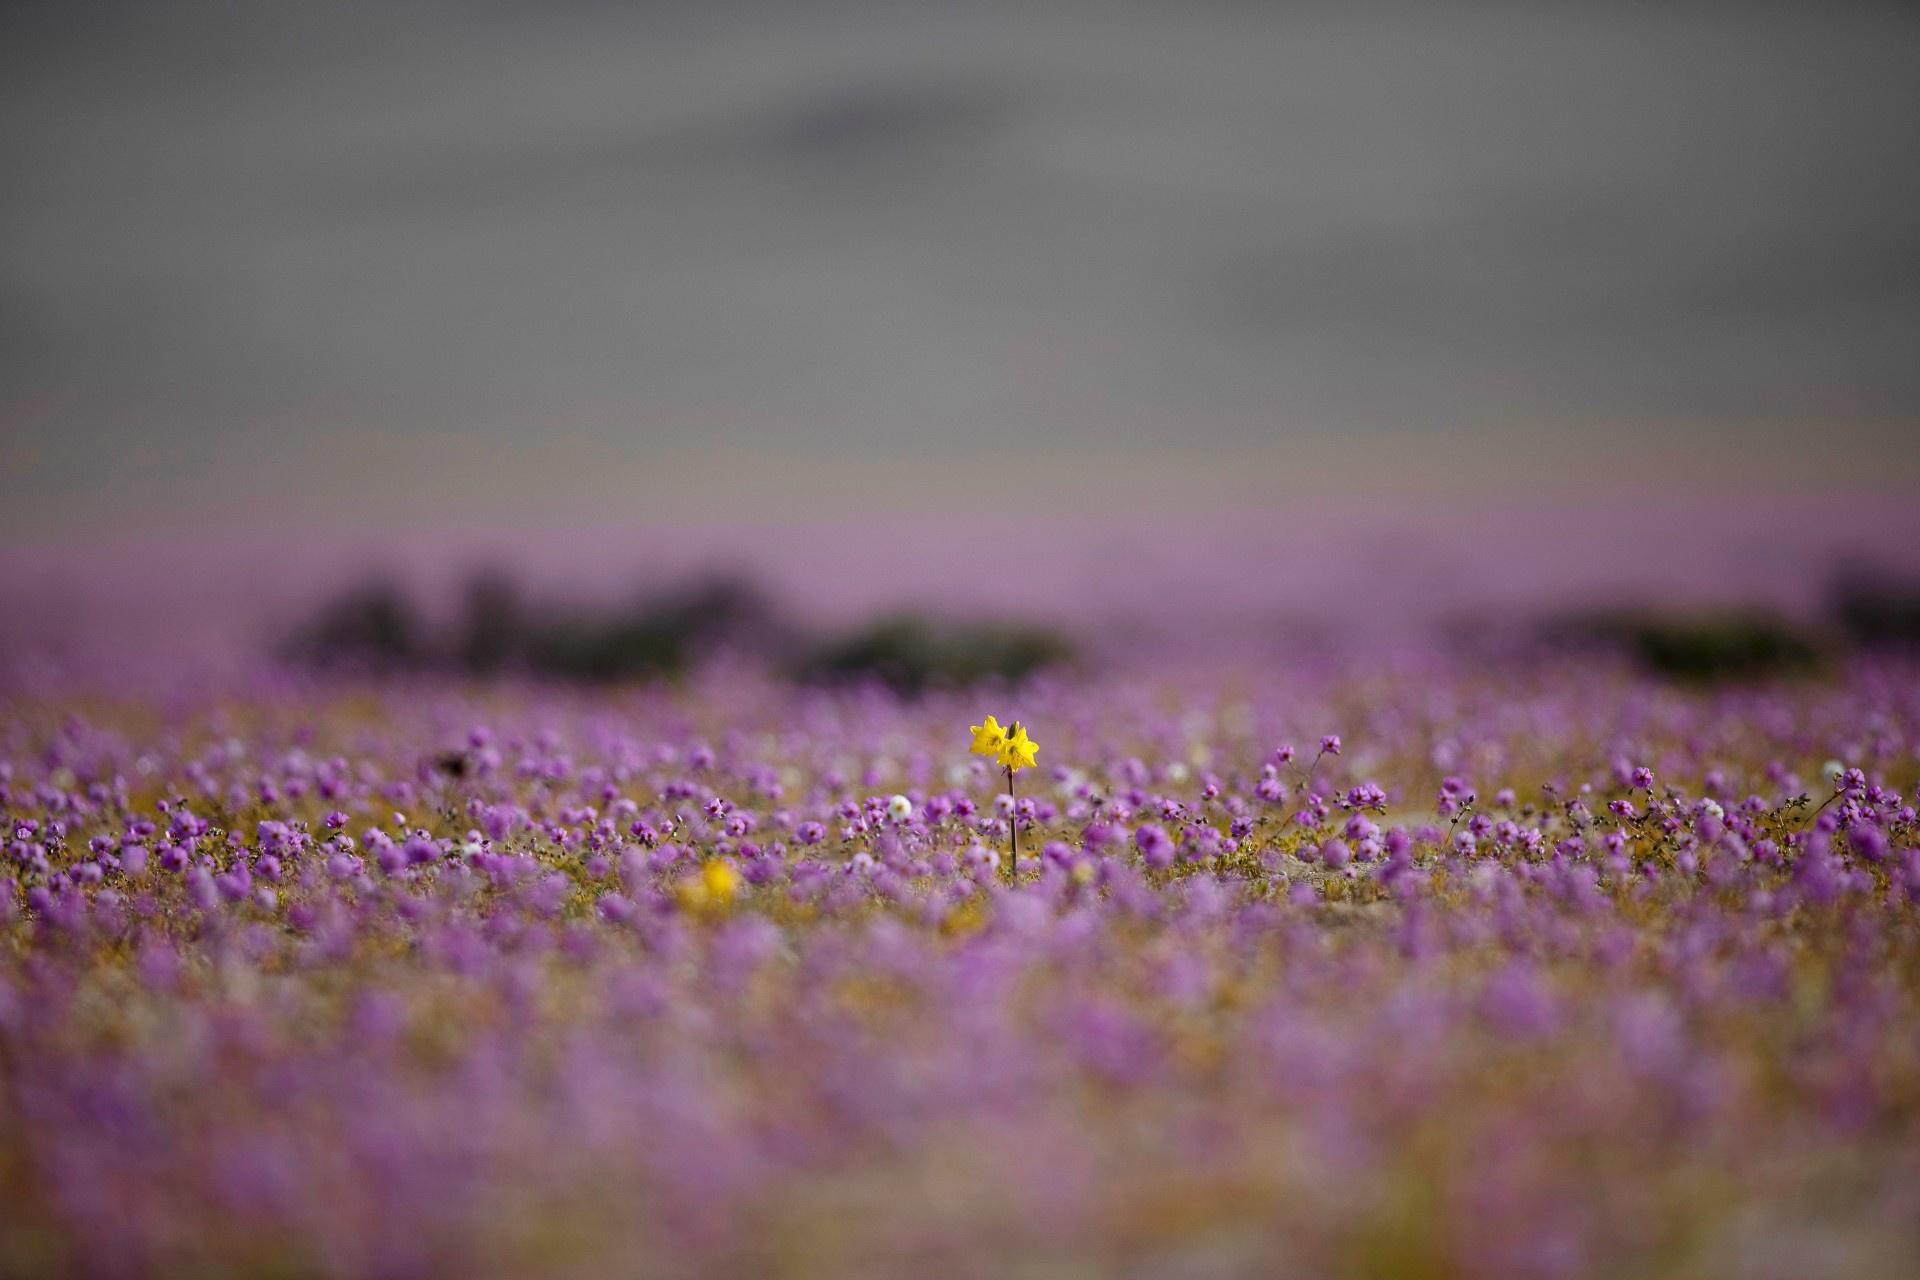 Kì diệu thảm hoa nở rực rỡ trên sa mạc khô cằn nhất thế giới - 2